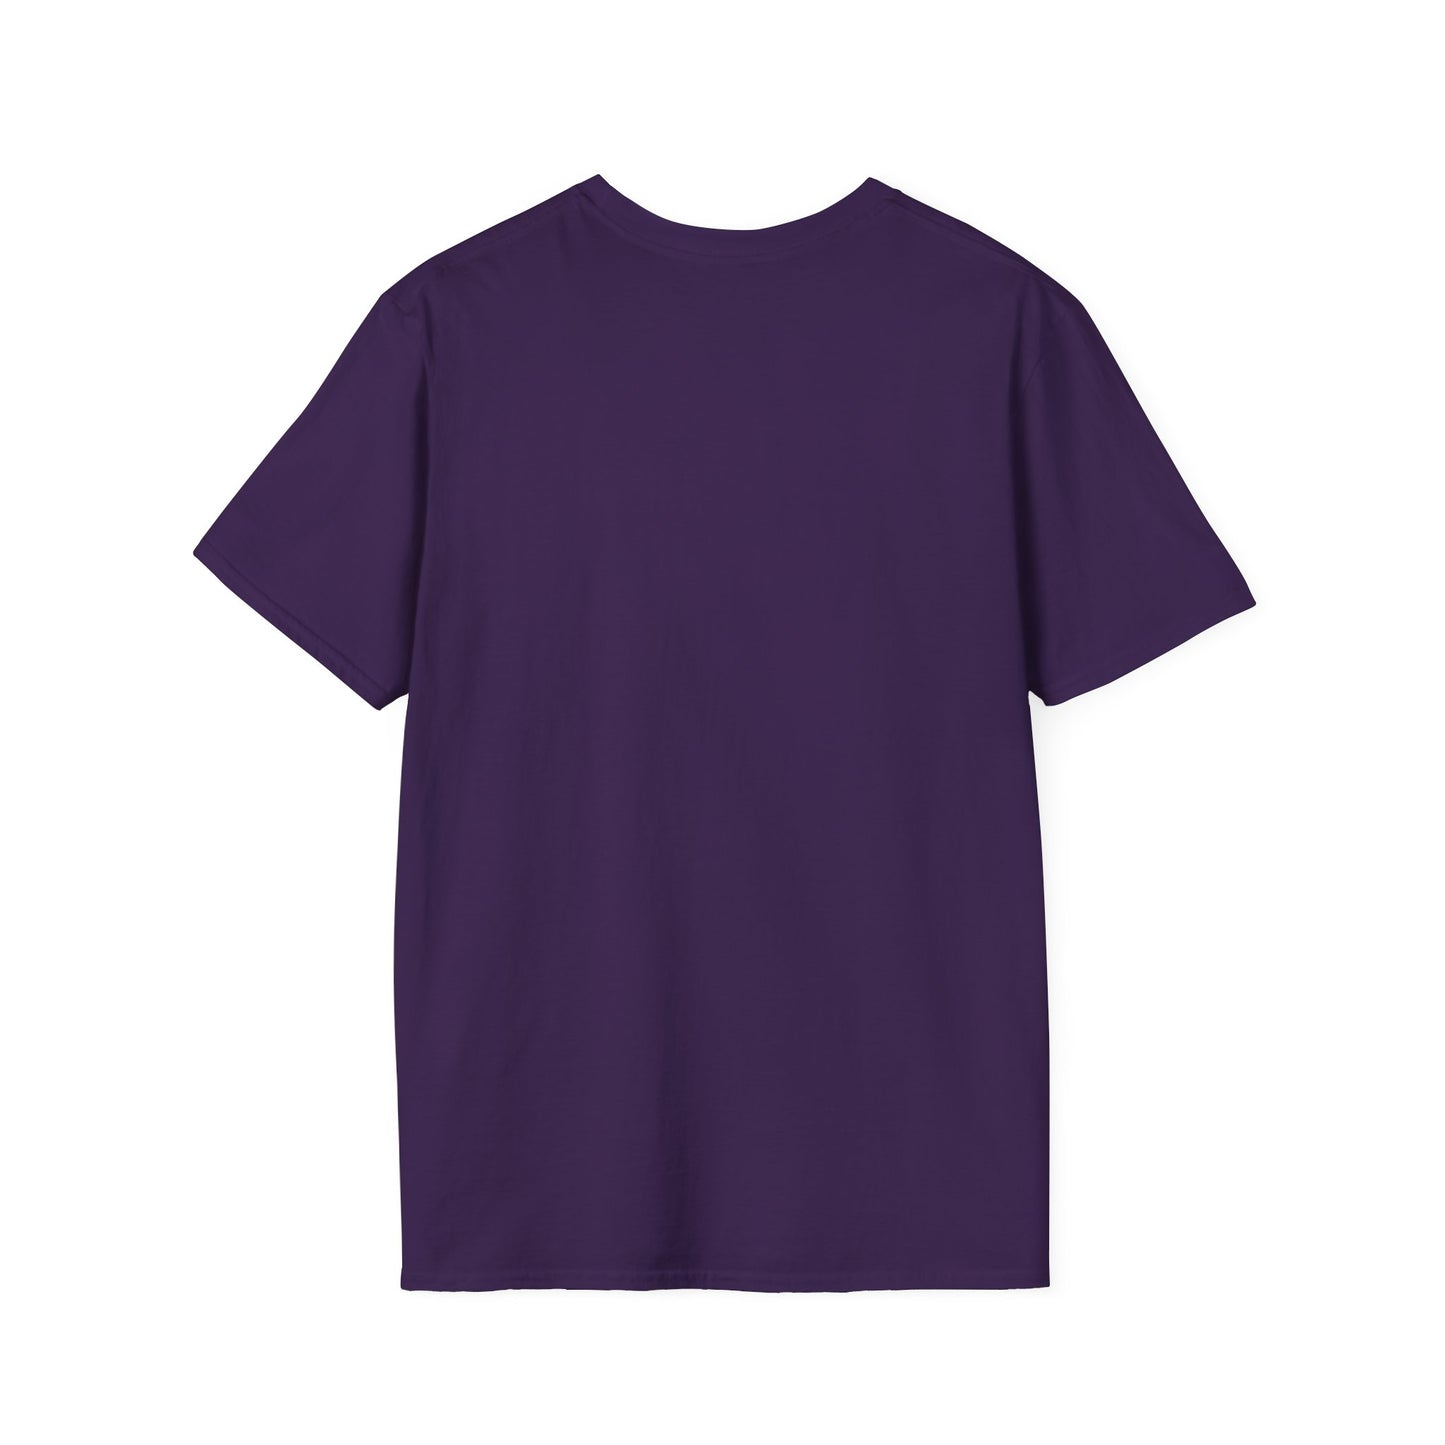 LETS GO SHELTIE * Unisex Softstyle T-Shirt